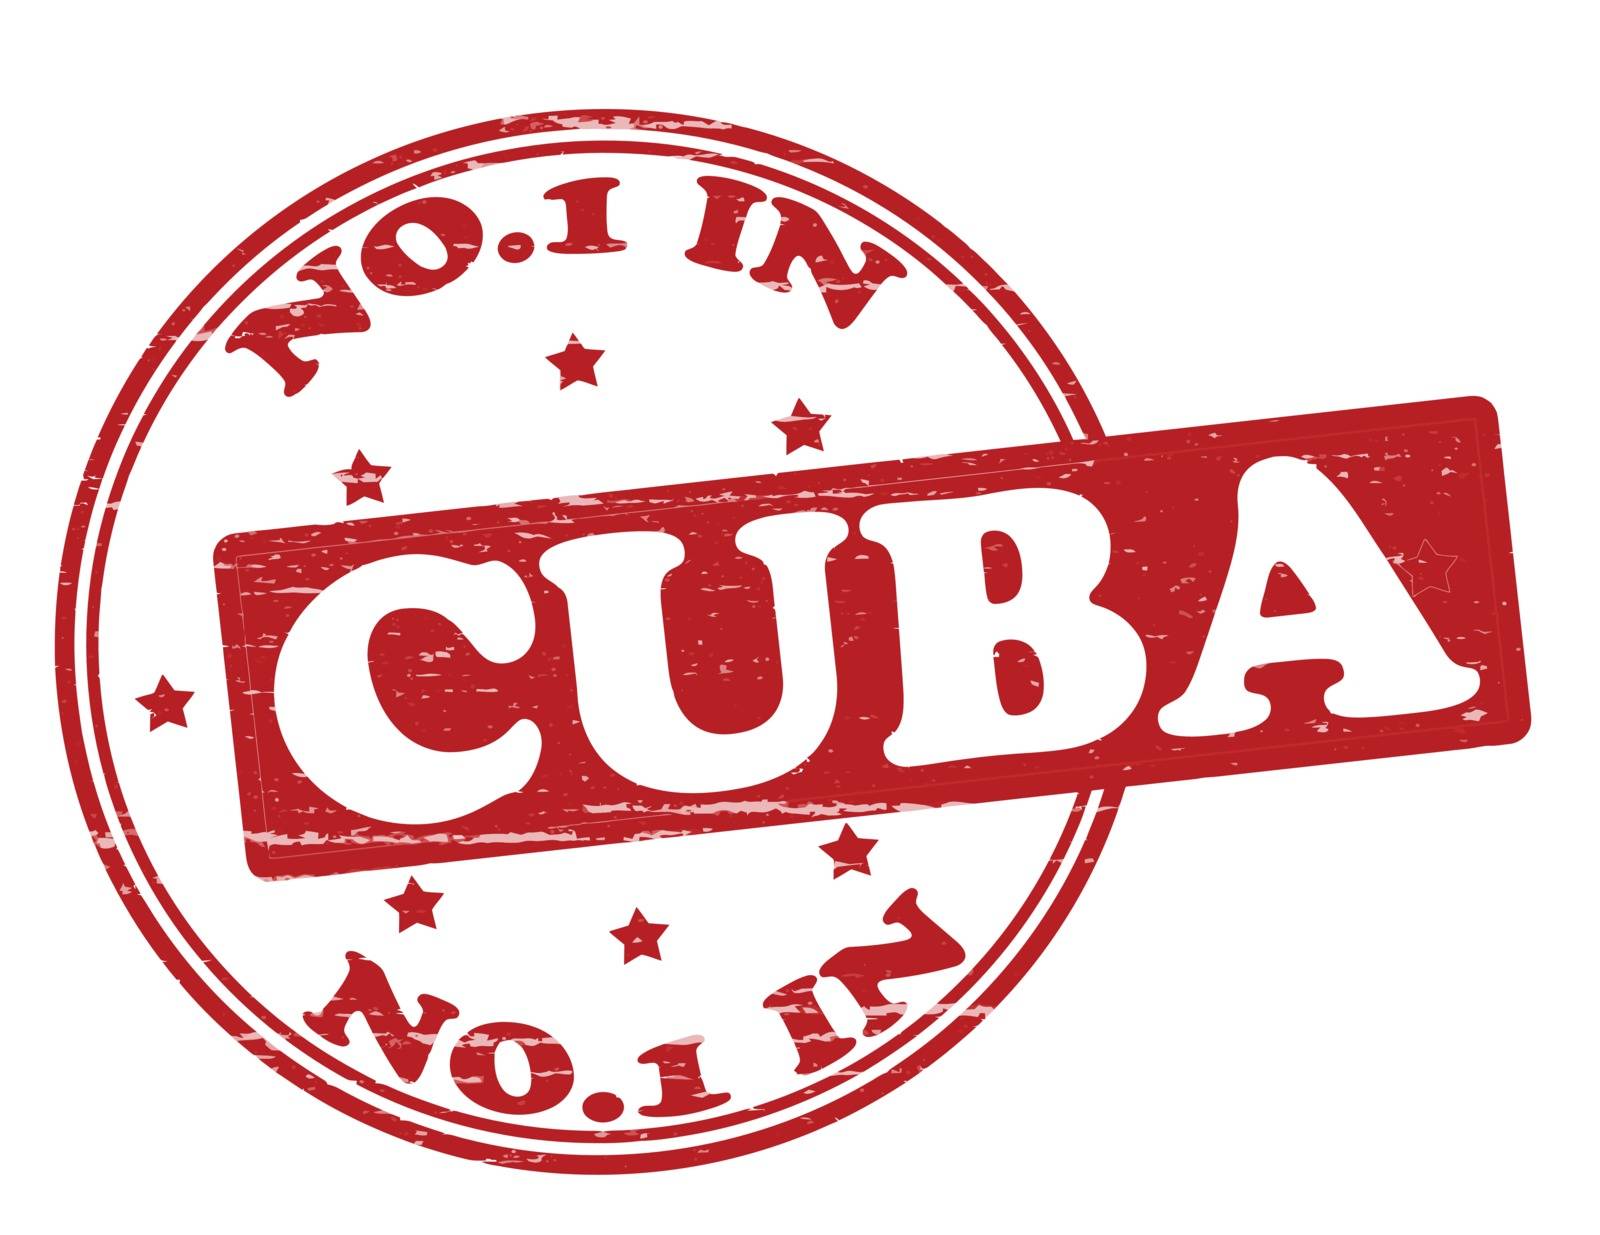 No one in Cuba by carmenbobo